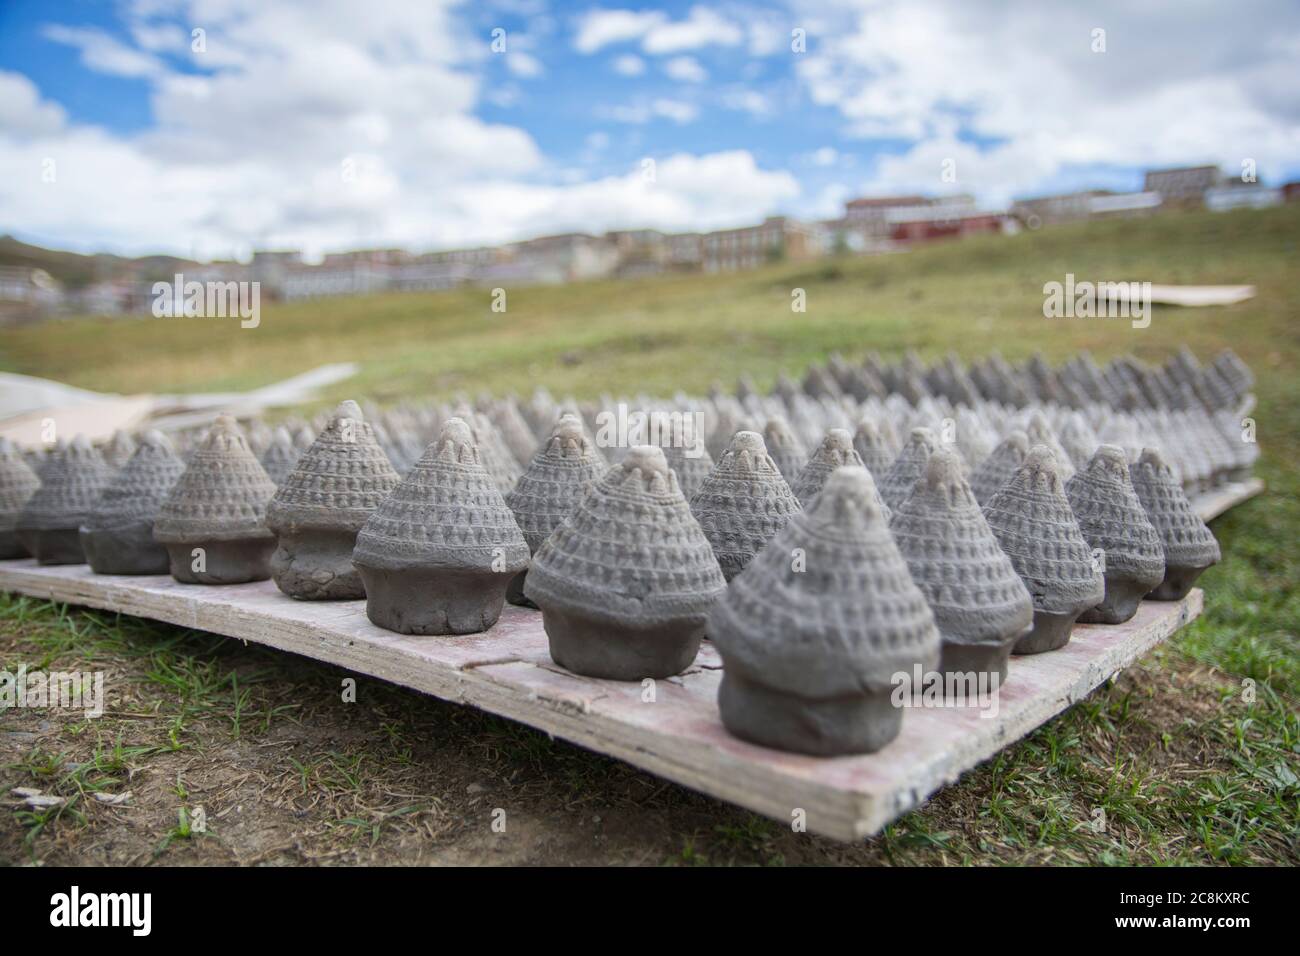 Tibetische Kunst: Viele TSA-tsa-Zapfen werden in der Sonne gebacken. Ein traditioneller Ton lucy Charme, in Form von "Chorten" (ein buddhistisches Denkmal), für den Geist verwendet Stockfoto